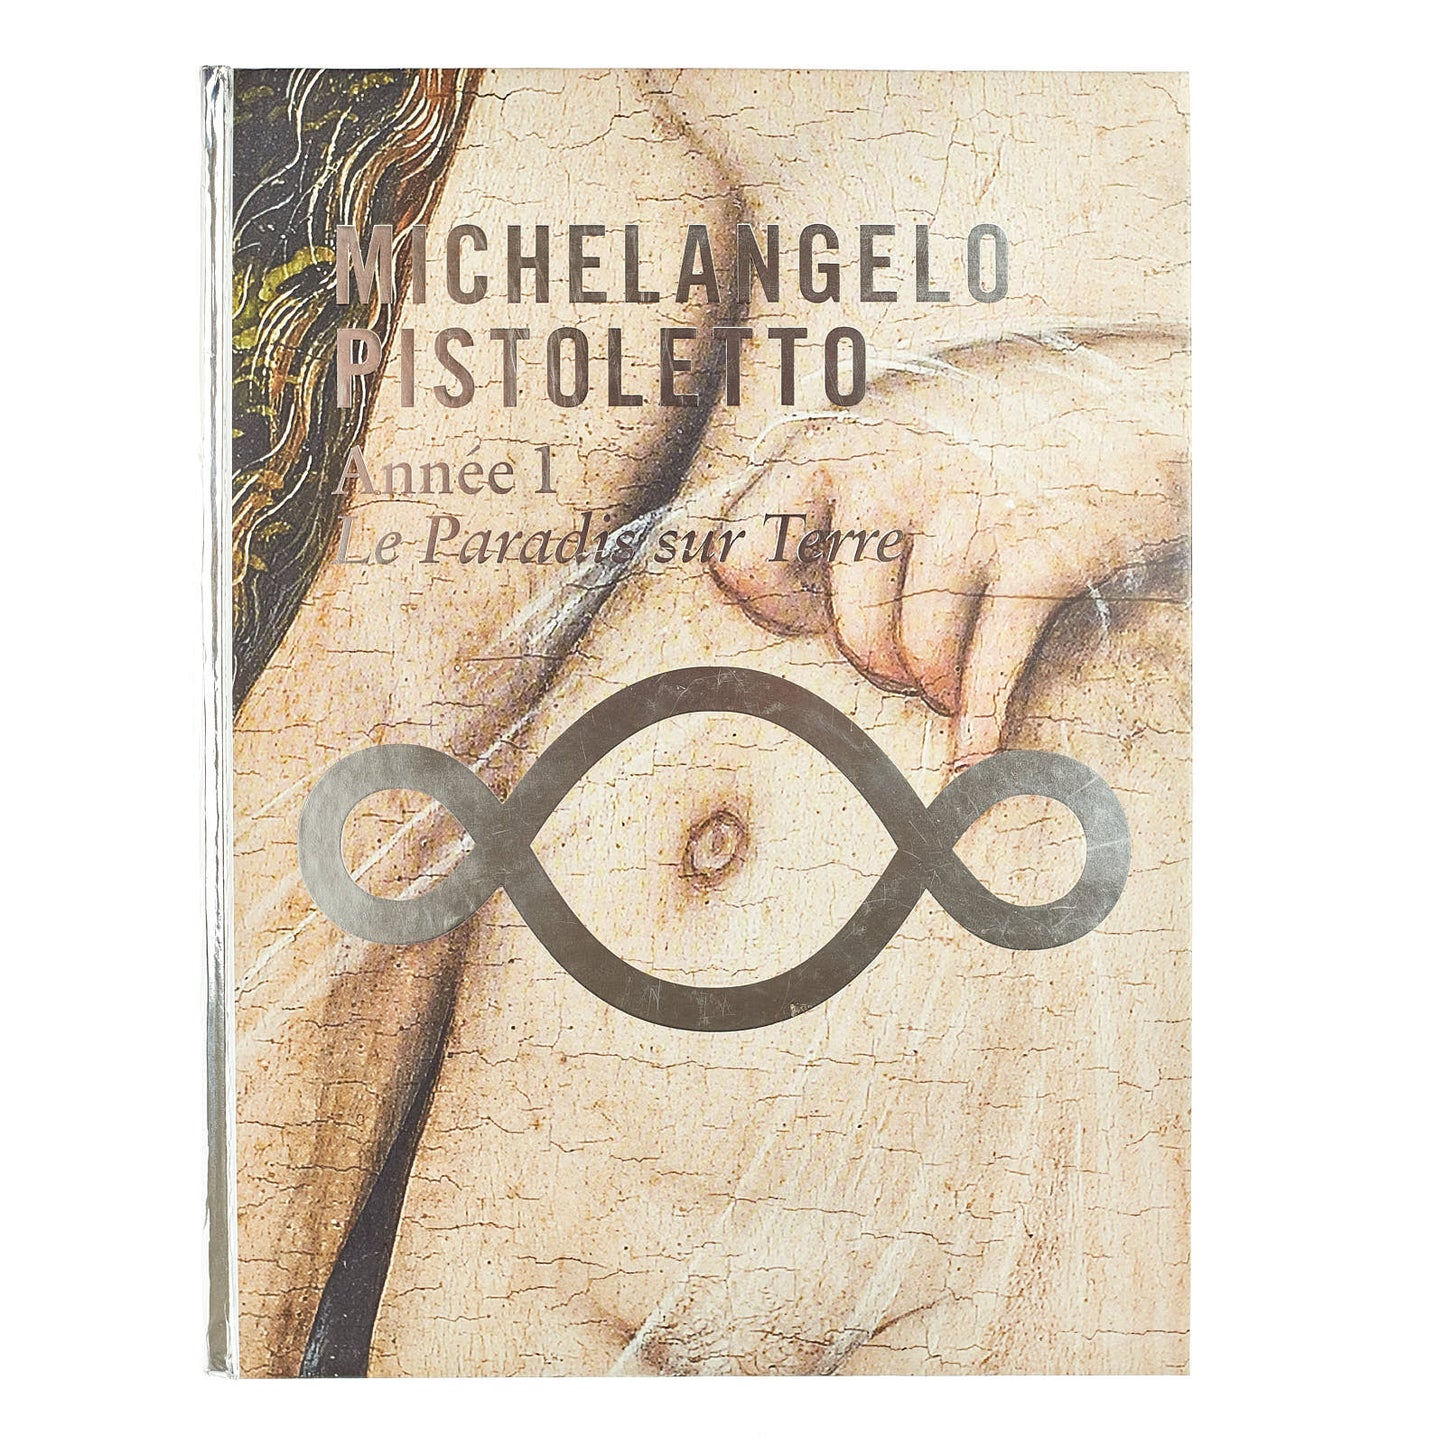 Michelangelo Pistoletto. Année I. Le Paradis sur Terre (exhibition catalogue)